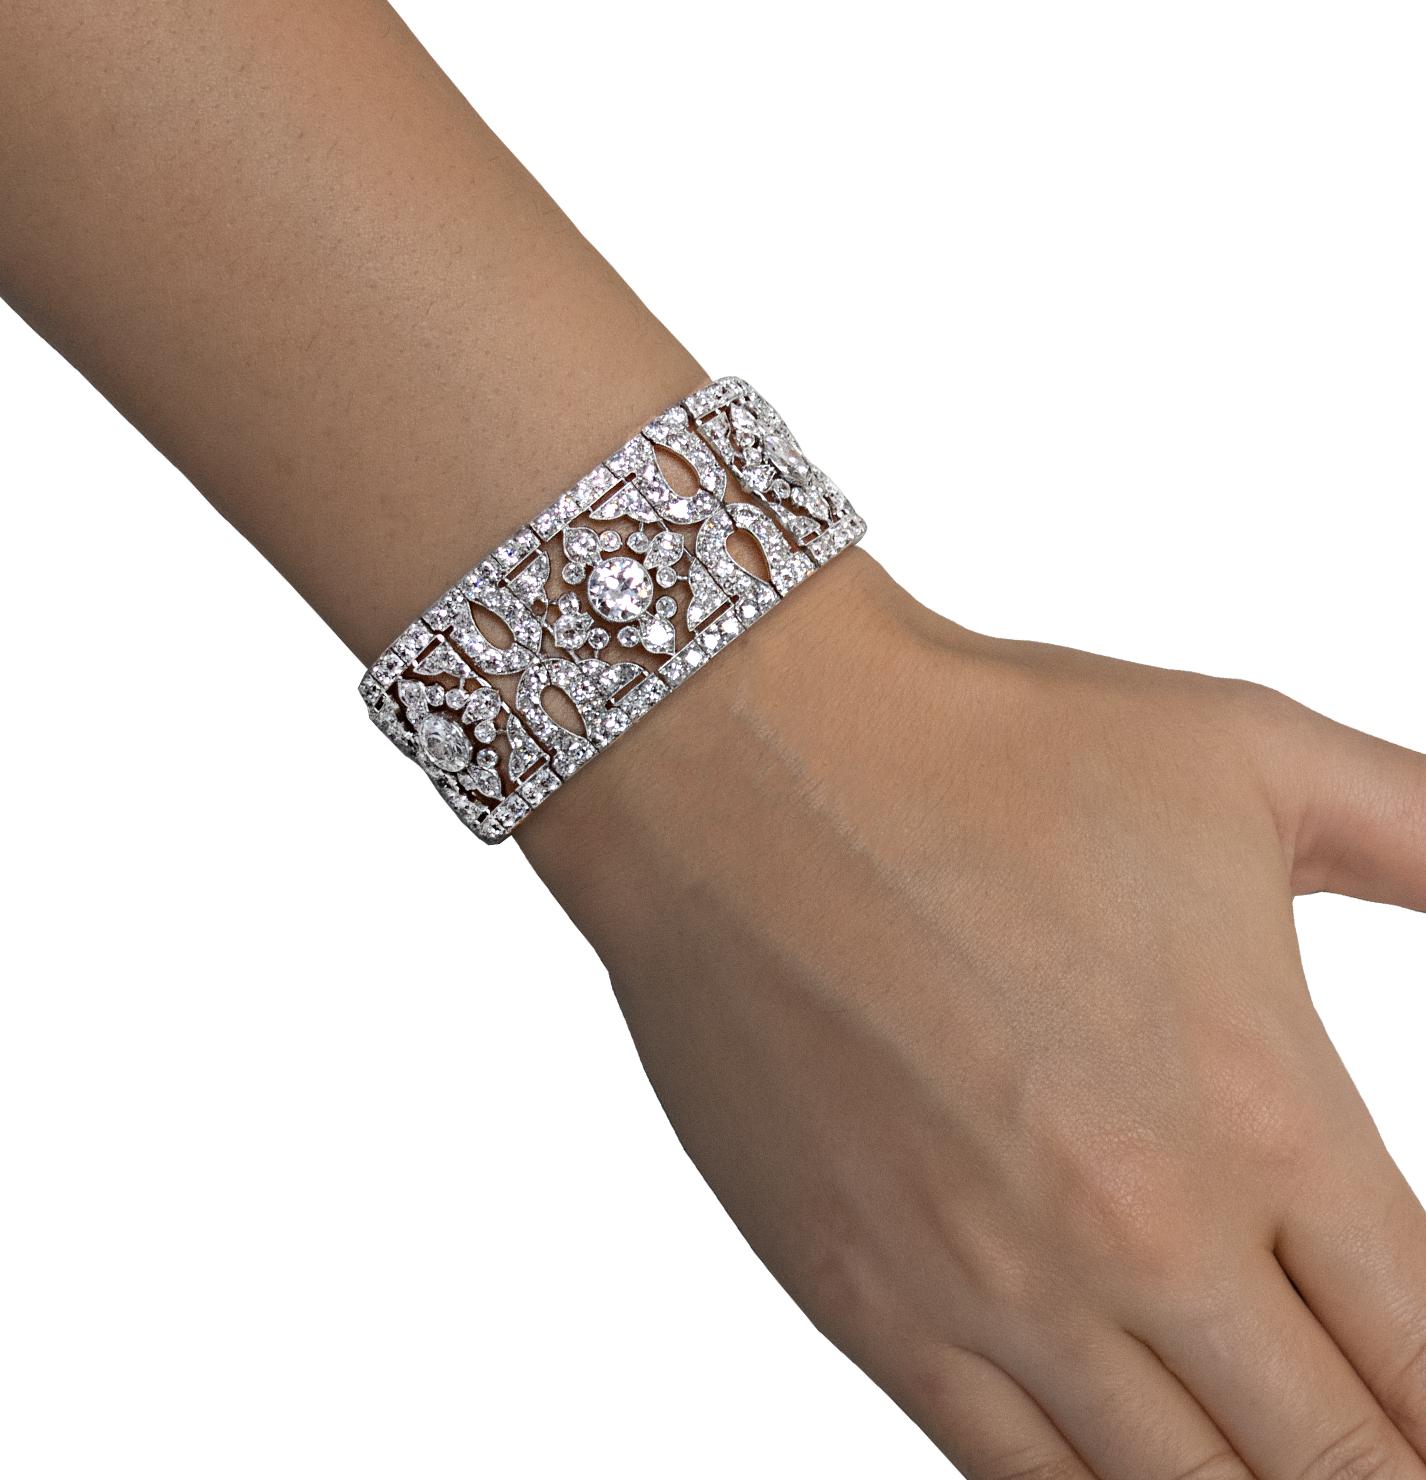 De la Maison Cartier, cet exquis bracelet en diamants Belle Epoque, Circa 1915, est réalisé en platine et présente 389 diamants taille Vieille Europe pesant environ 40,55 carats au total, de couleur G-H et de pureté VS-SI. Des maillons ouverts en